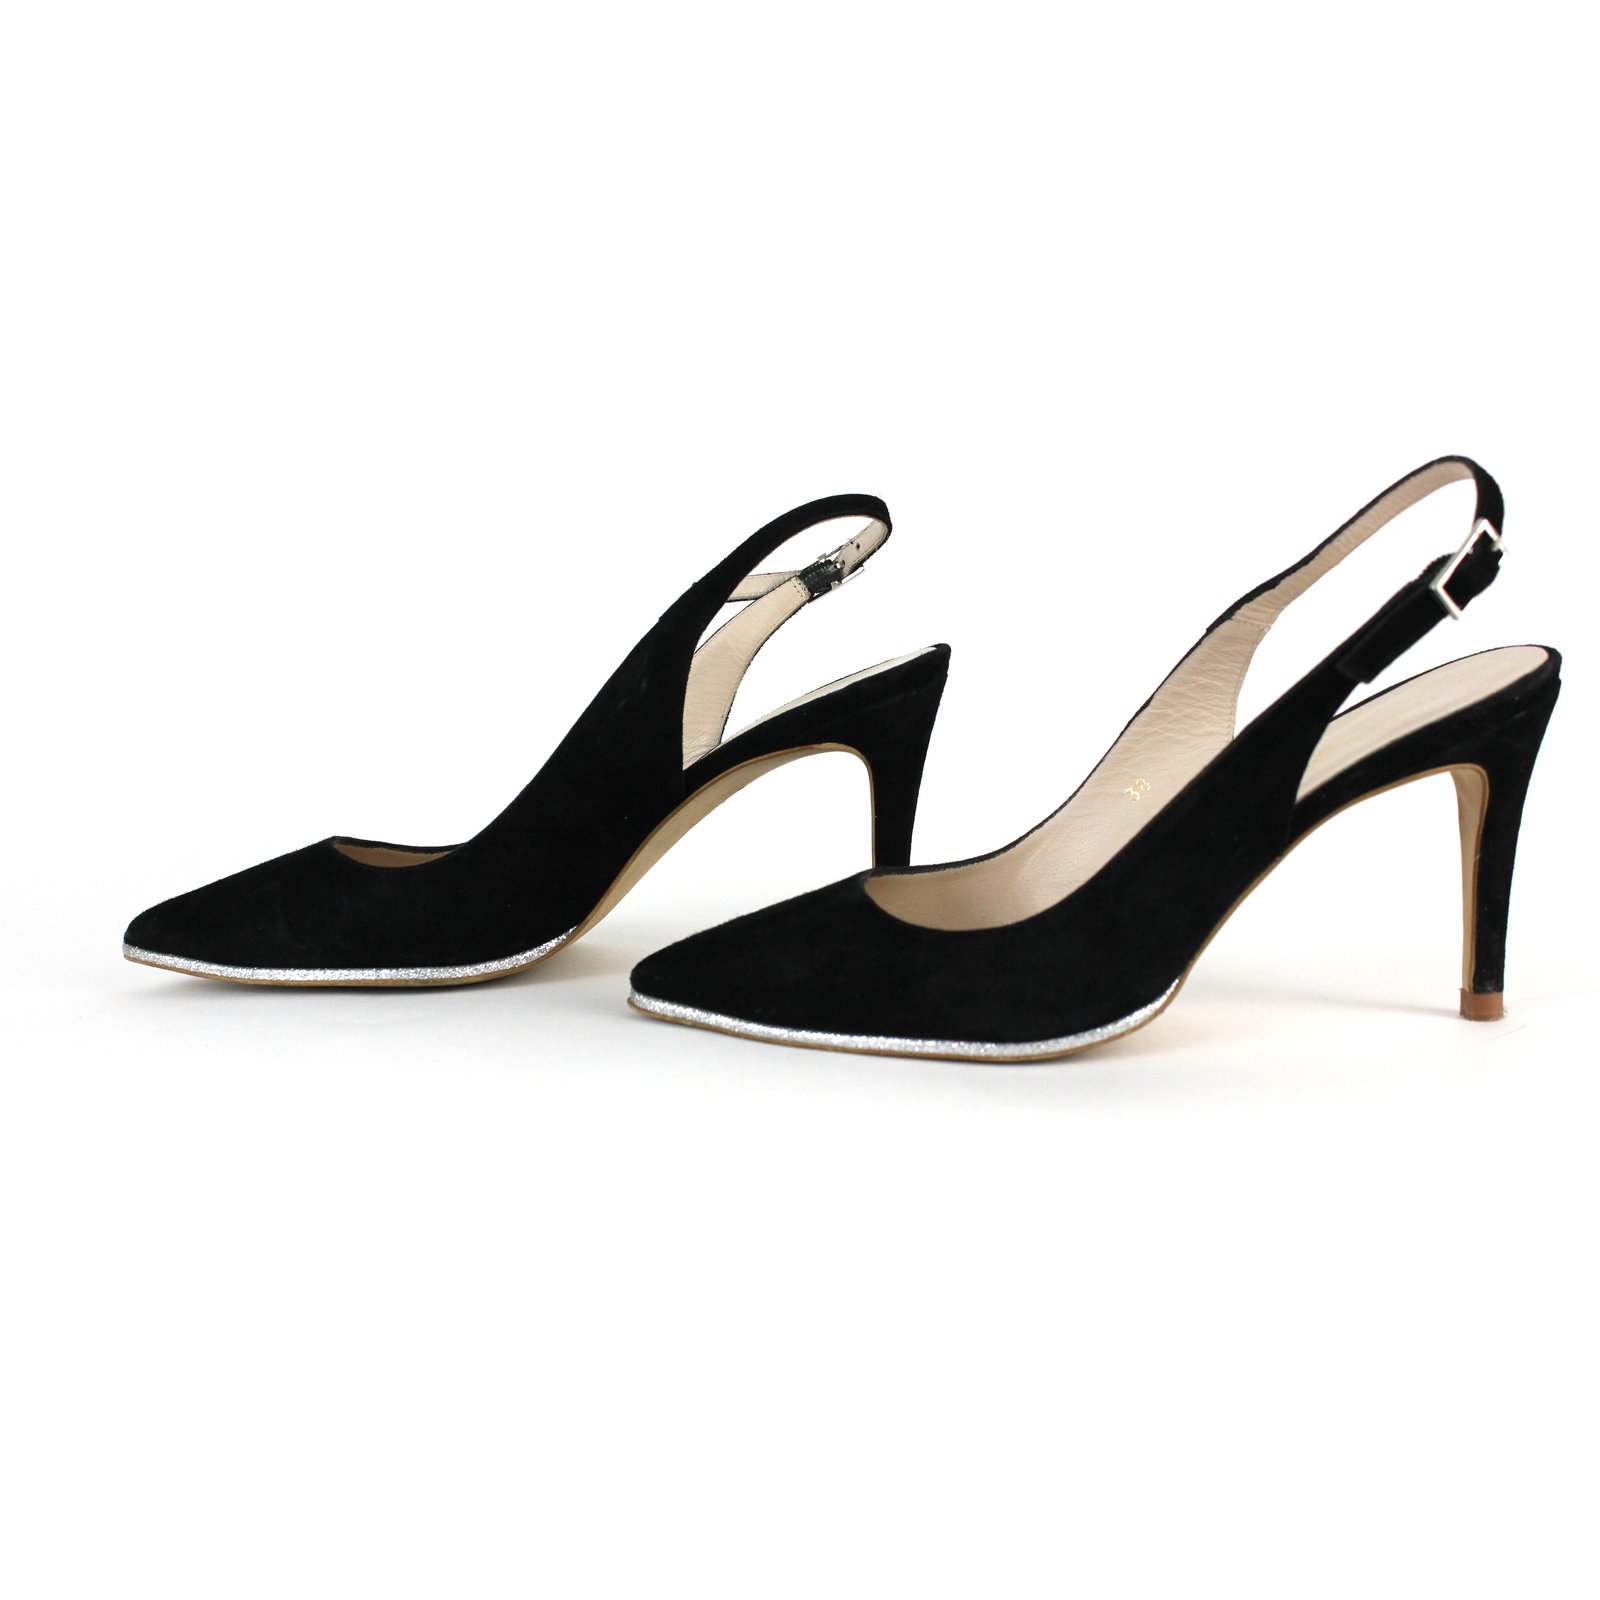 Buy Mochi Women Yellow Casual Sandals Online | SKU: 40-1948-33-36 – Mochi  Shoes